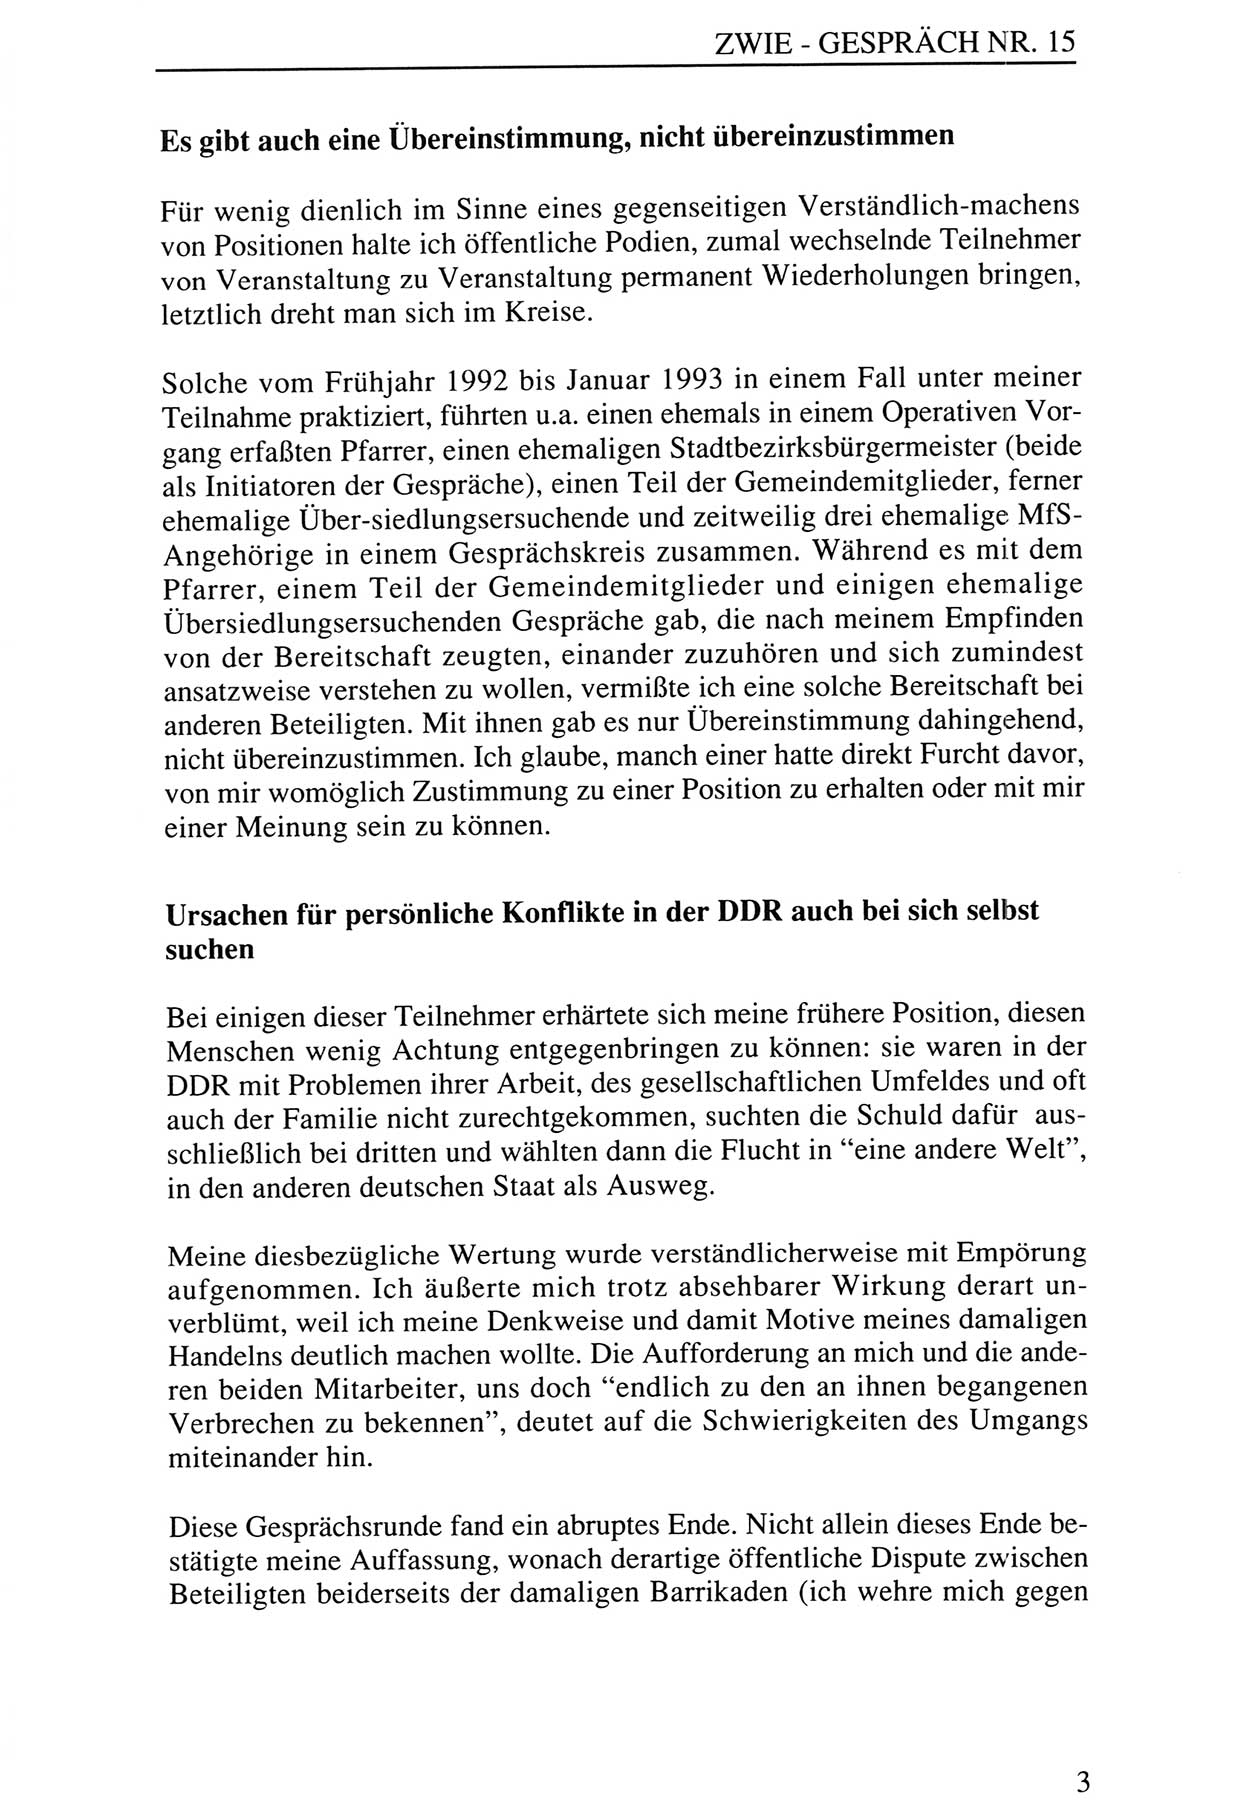 Zwie-Gespräch, Beiträge zur Aufarbeitung der Staatssicherheits-Vergangenheit [Deutsche Demokratische Republik (DDR)], Ausgabe Nr. 15, Berlin 1993, Seite 3 (Zwie-Gespr. Ausg. 15 1993, S. 3)